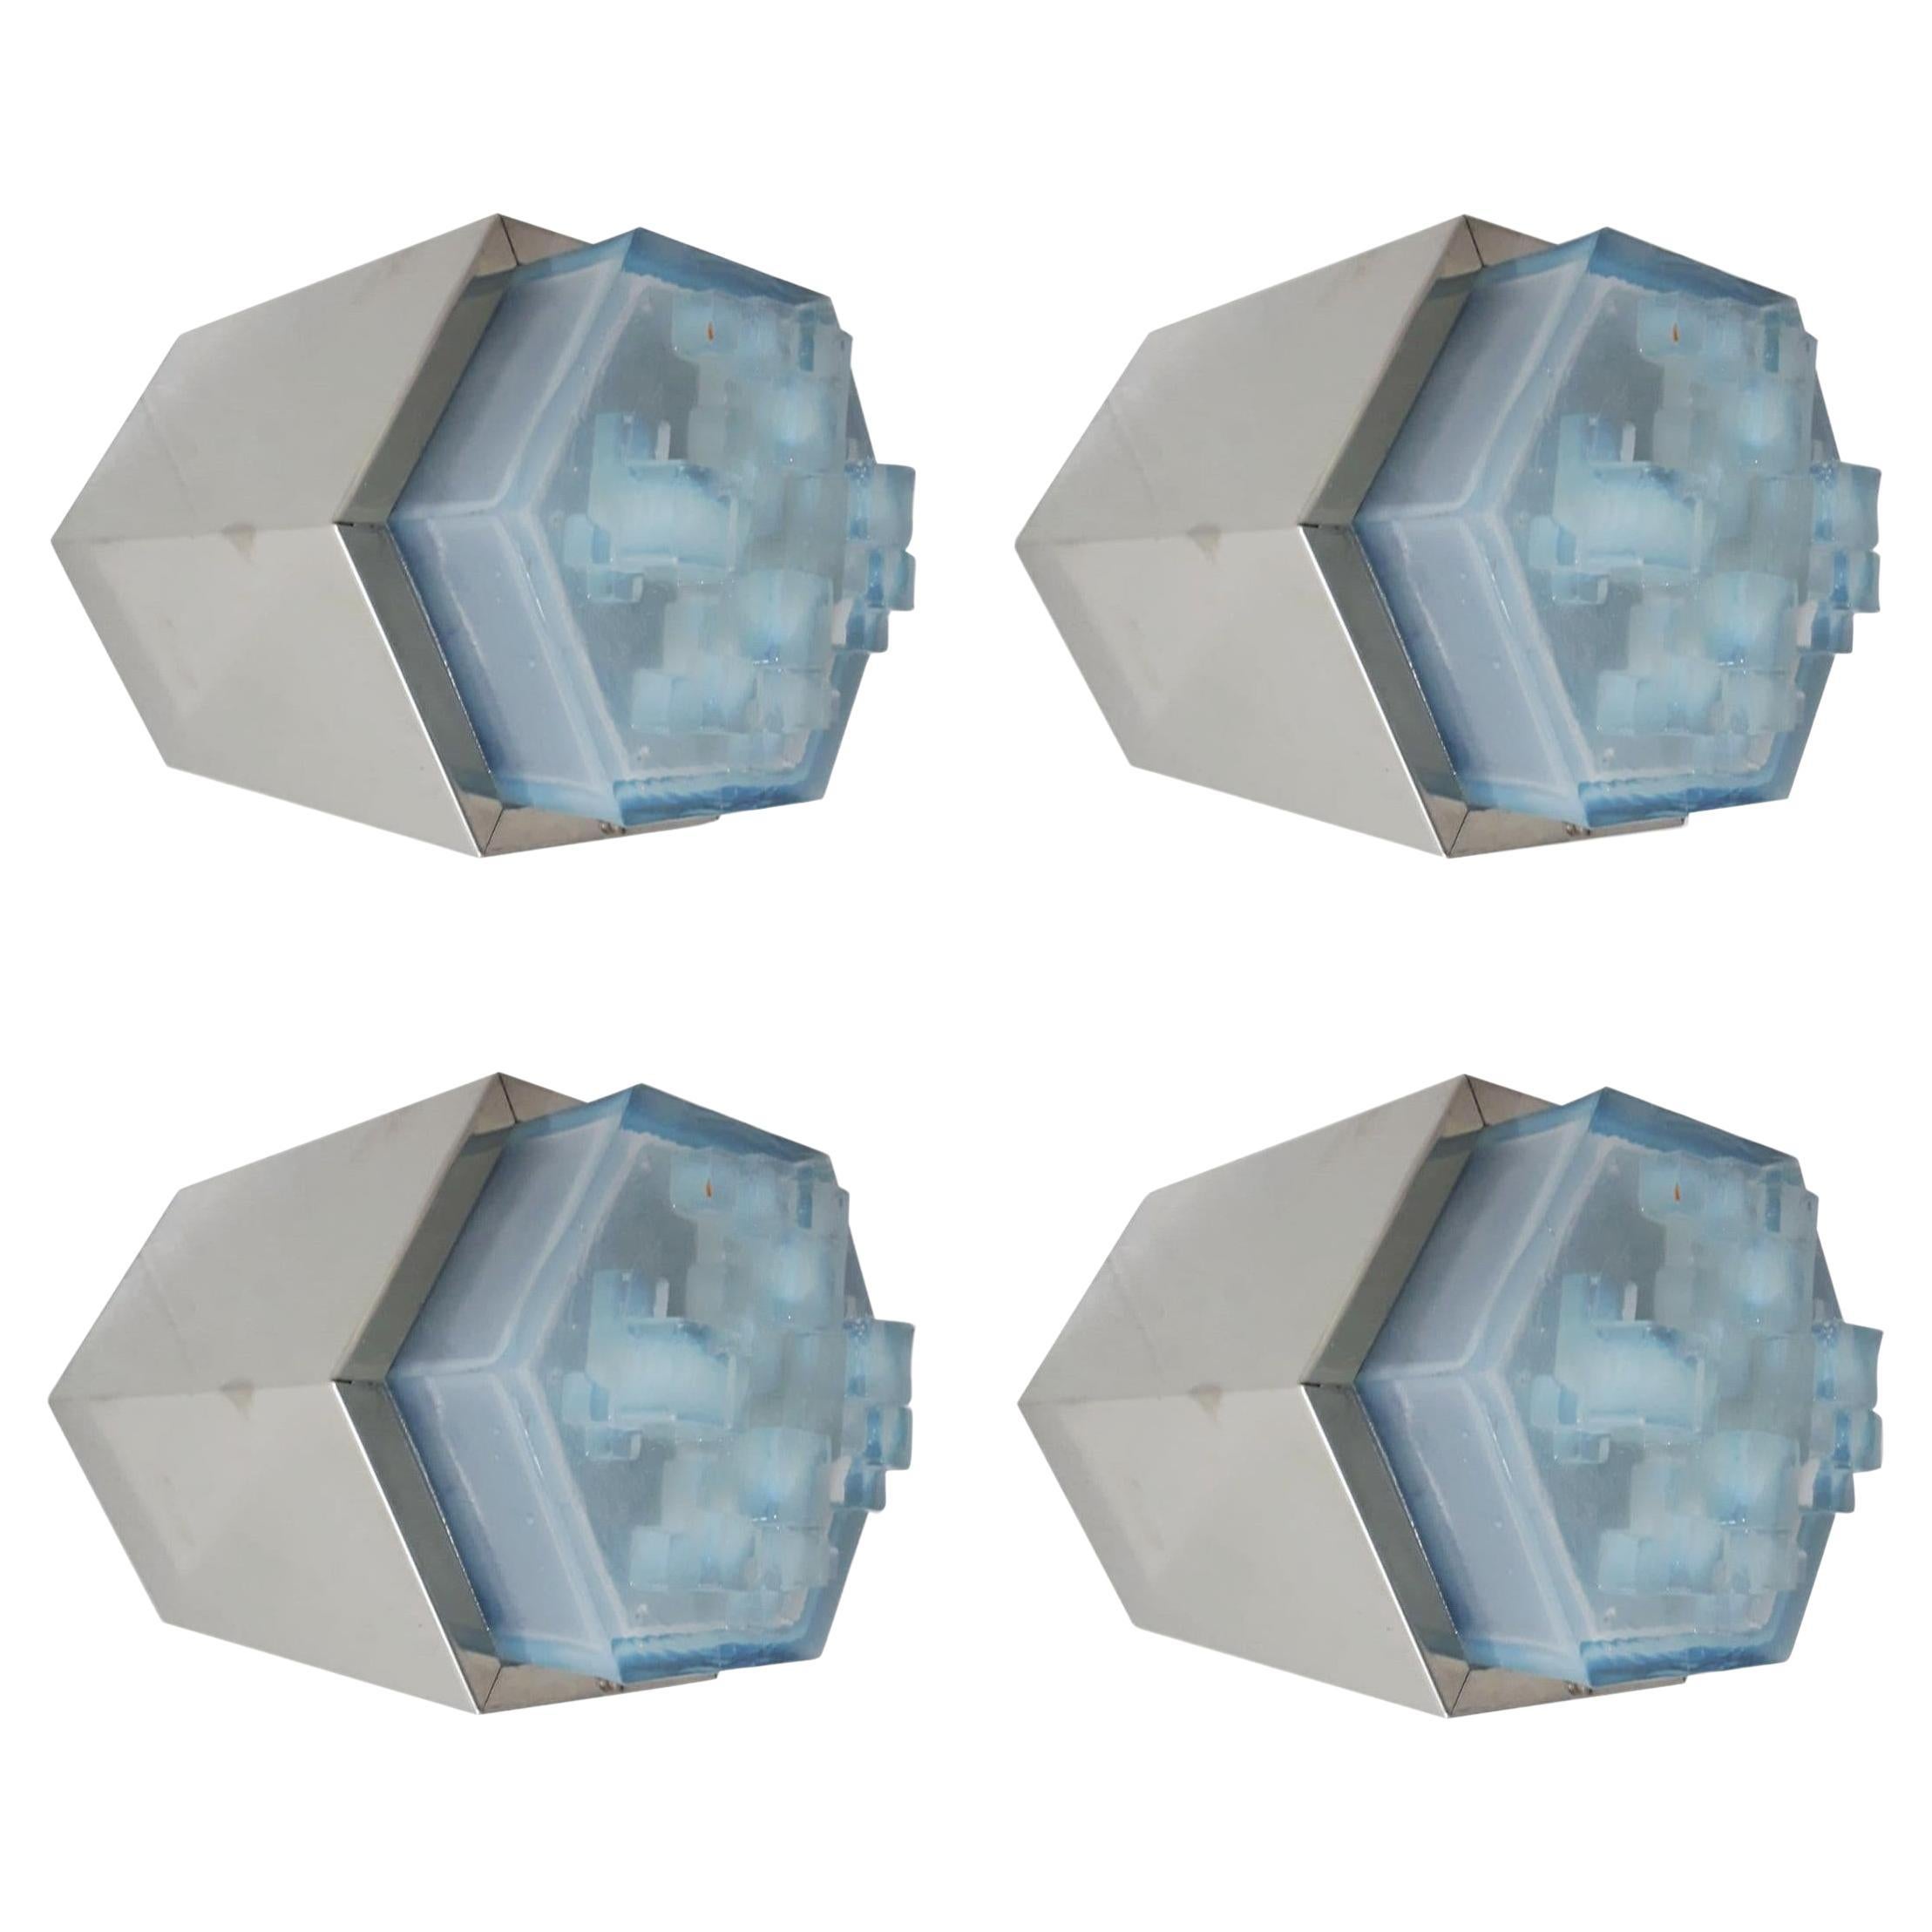 Appliques modulaires hexagonales / encastrées Poliarte - 4 disponibles